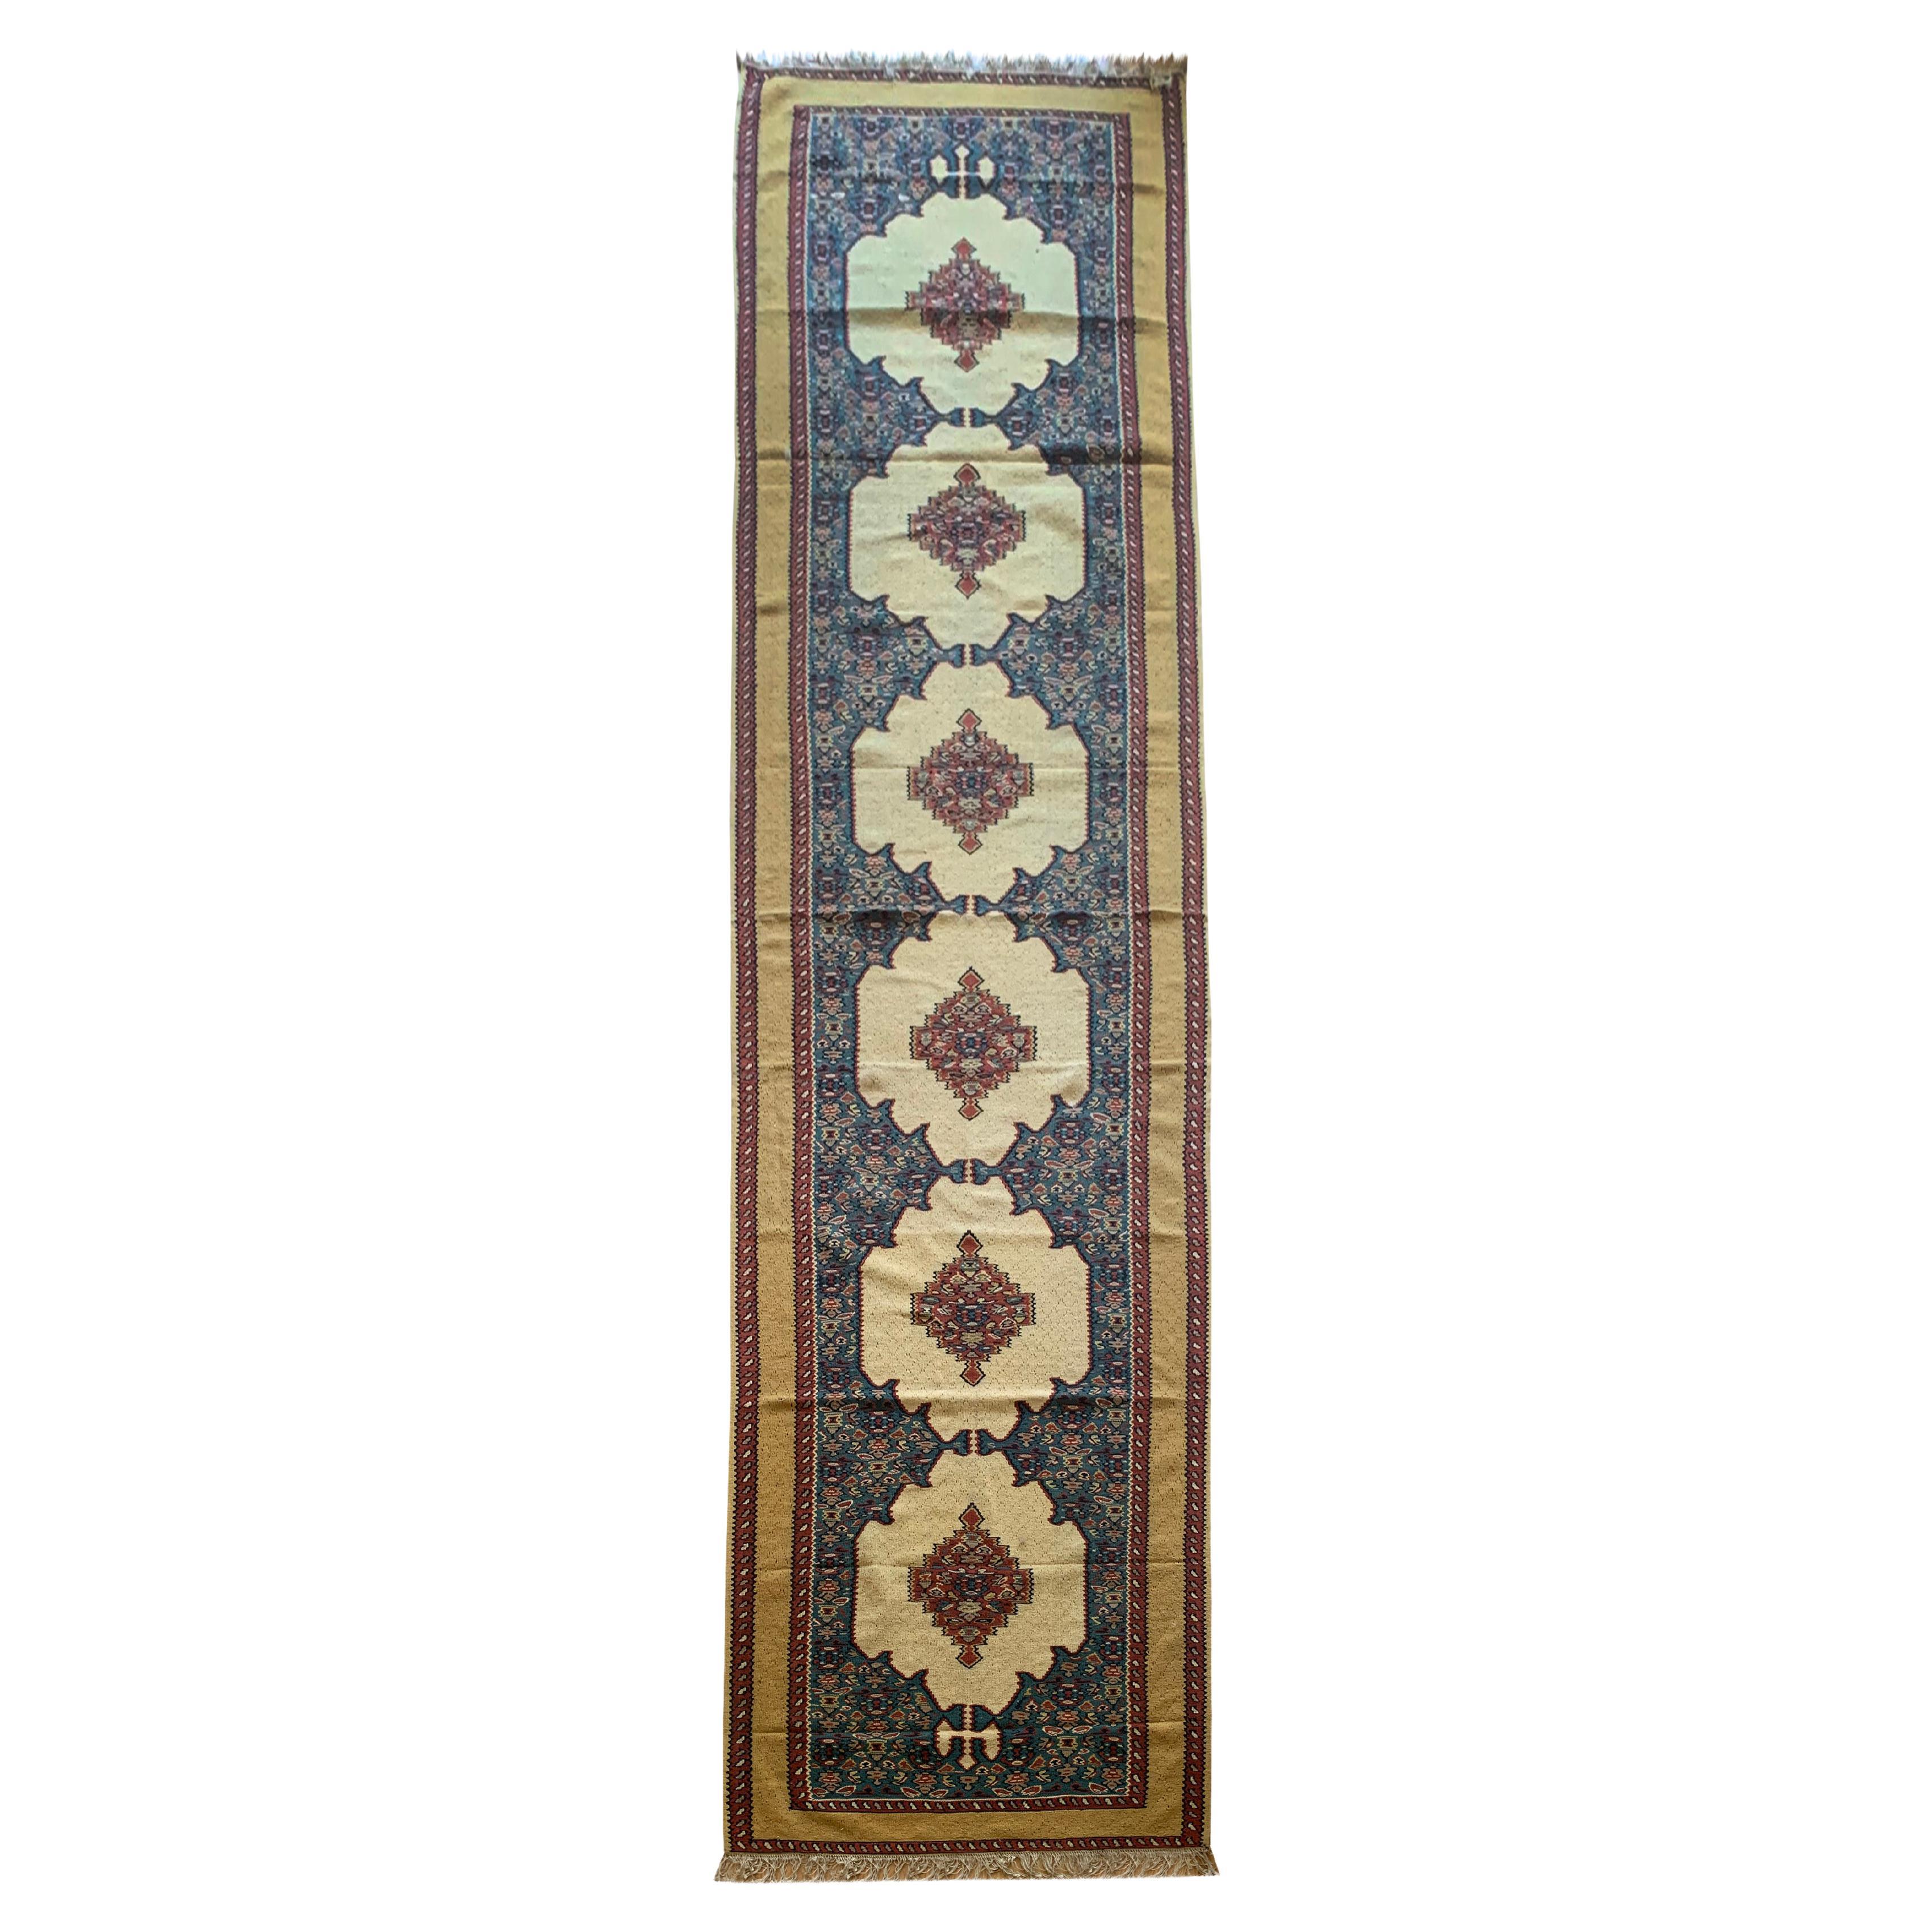 Orientalischer, handgewebter, elfenbeinblauer Flur-Teppich aus orientalischem Kelim